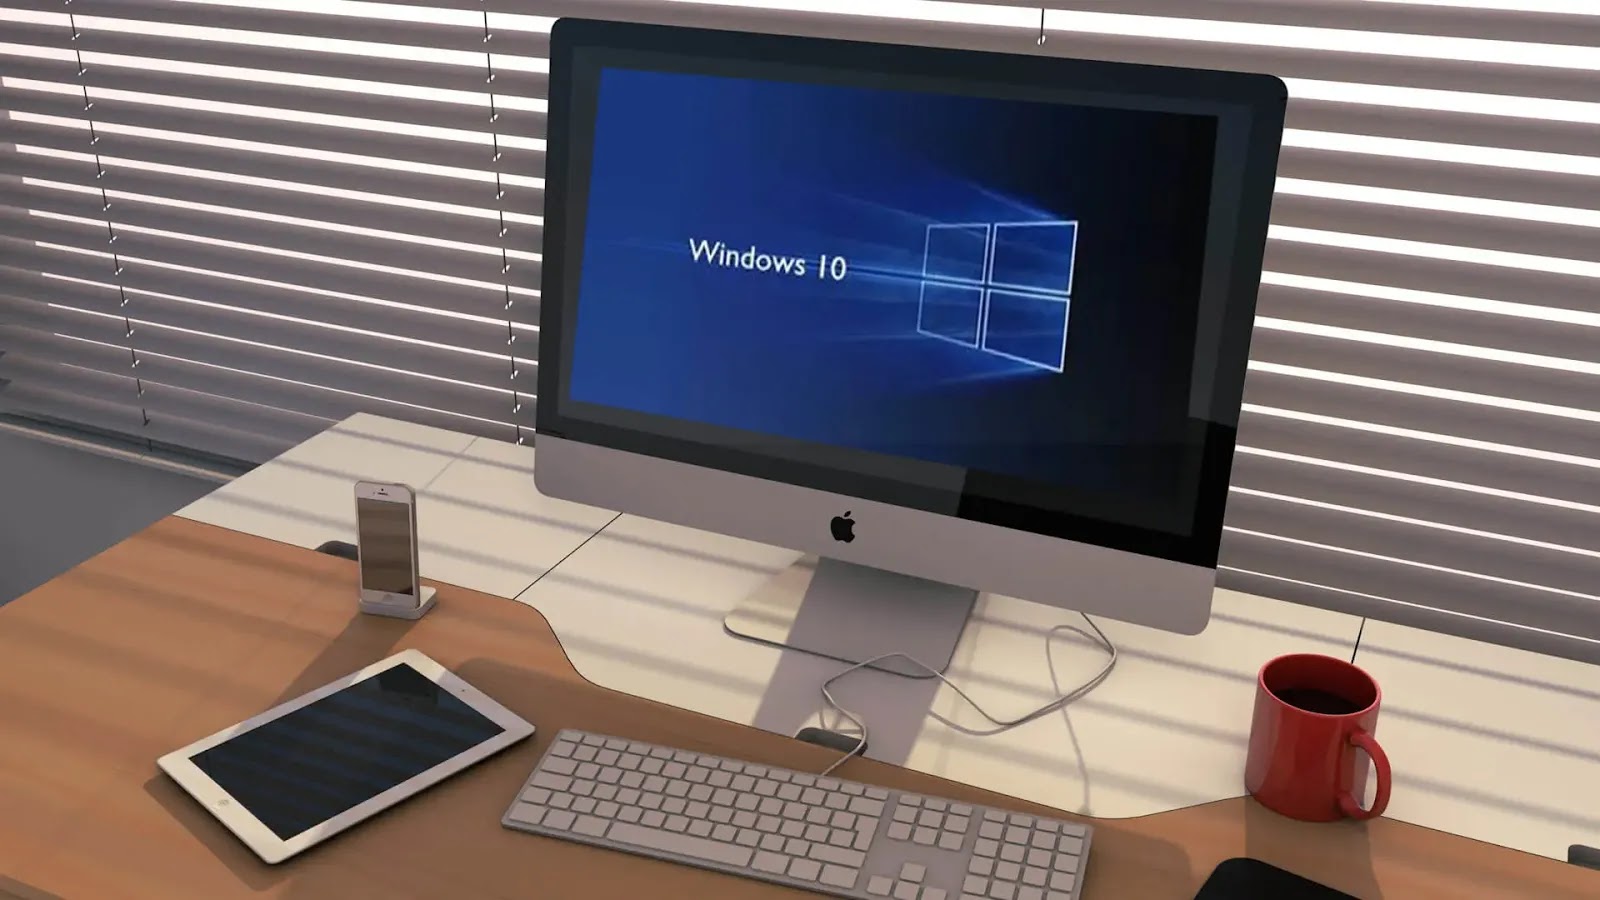 Windows 10 | سلسلة تعلم ويندوز 10 من الصفر وحتى الاحتراف | اعدادات سطح المكتب